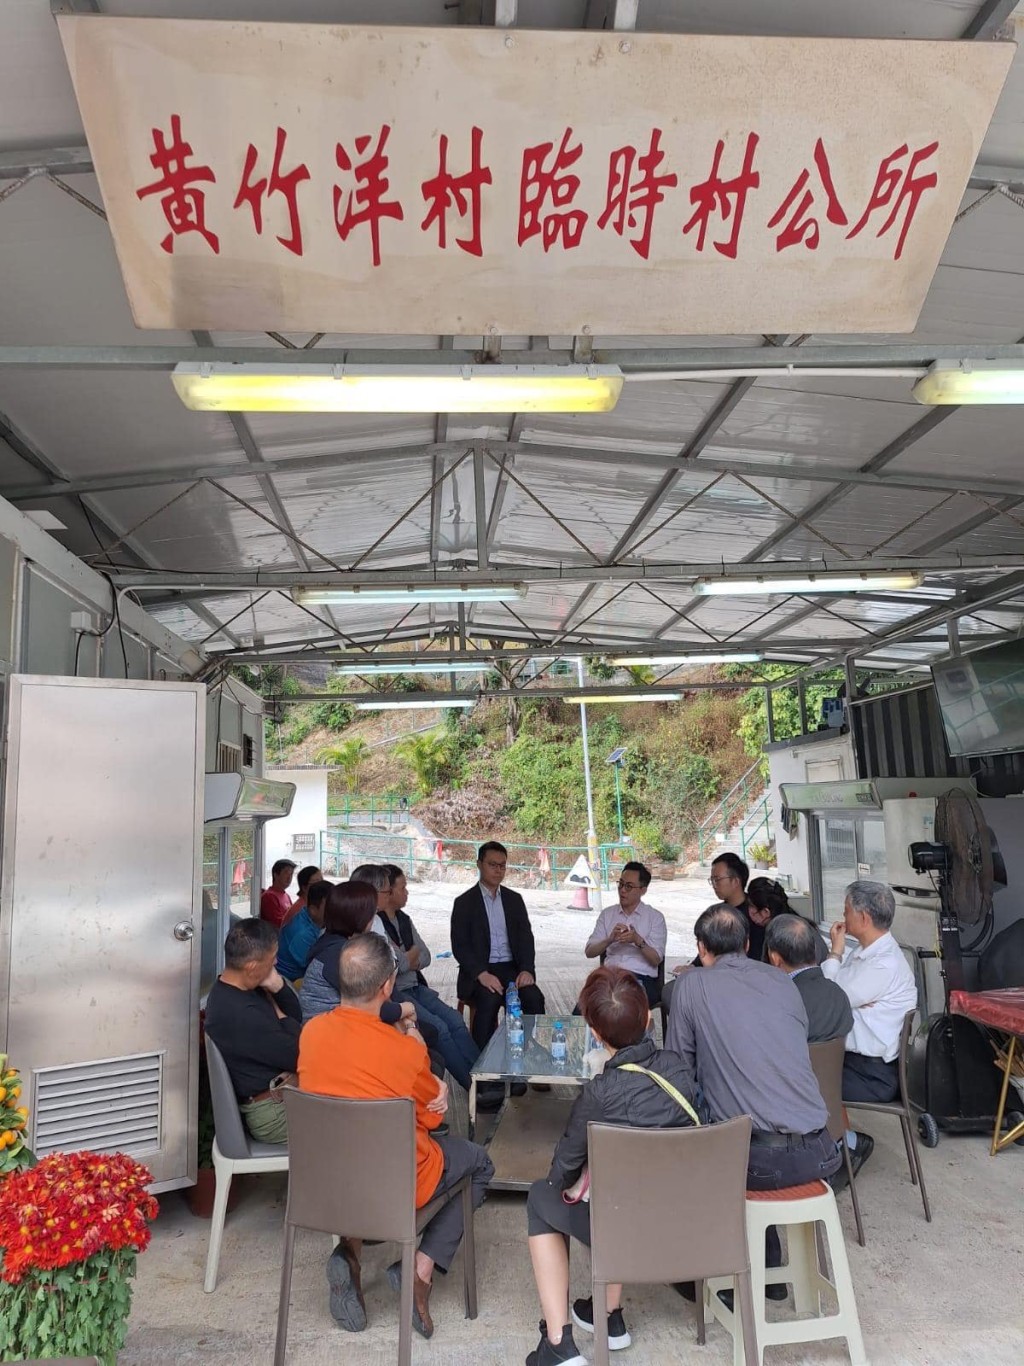 沙田民政专员、运输署代表、小巴营运商在黄竹洋村内协商解决办法。(民政事务总署fb)